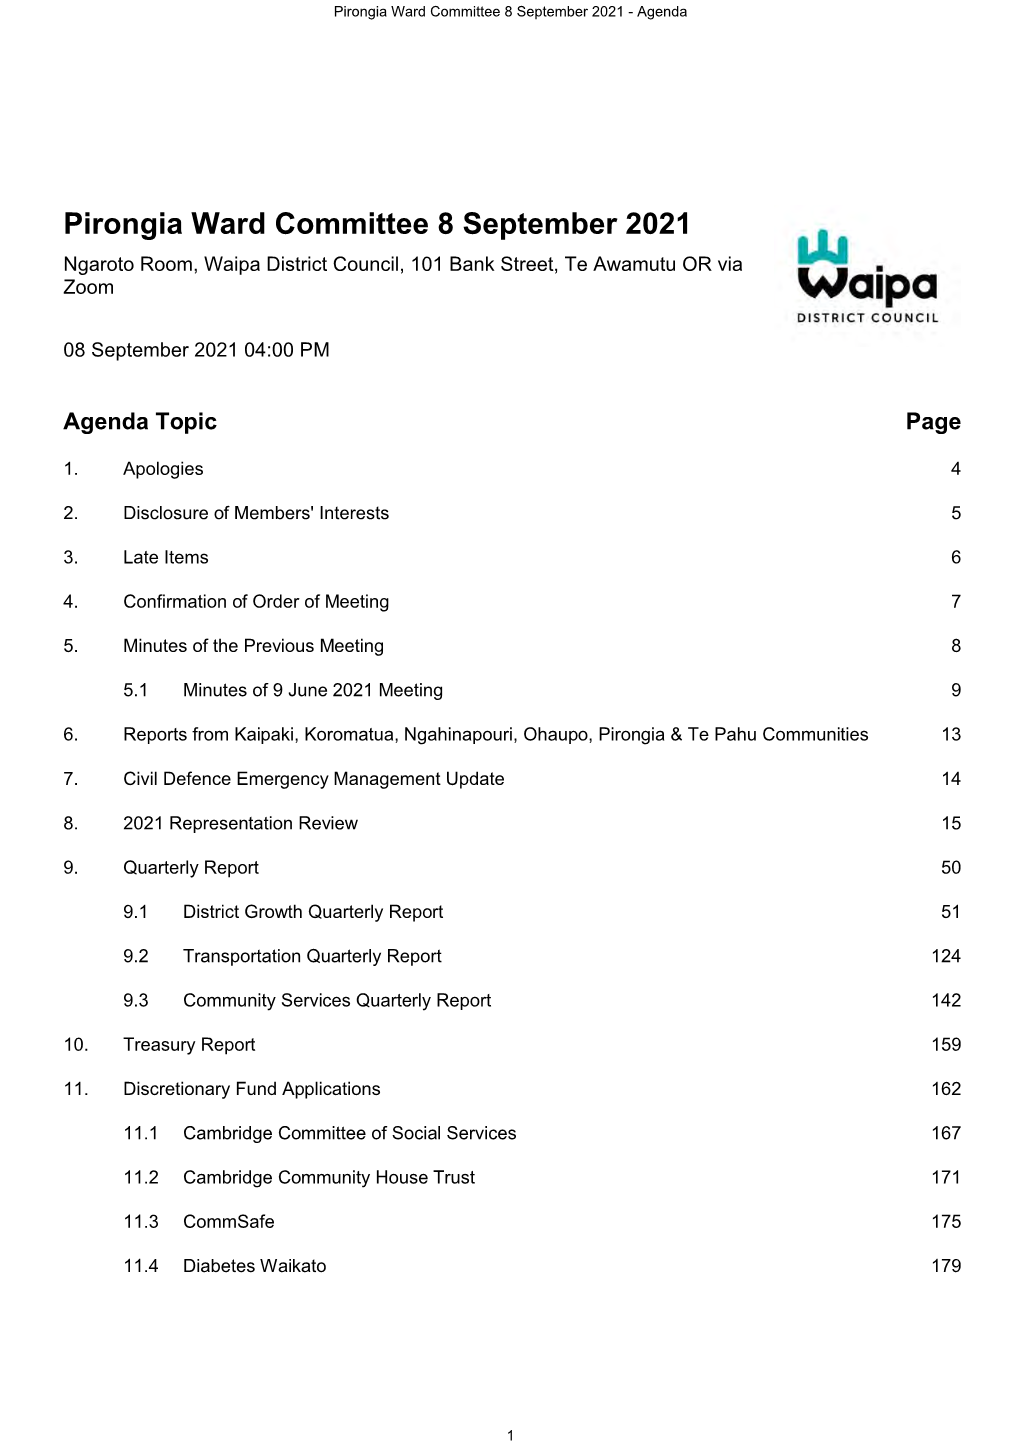 Pirongia Ward Committee Agenda 8 September 2021